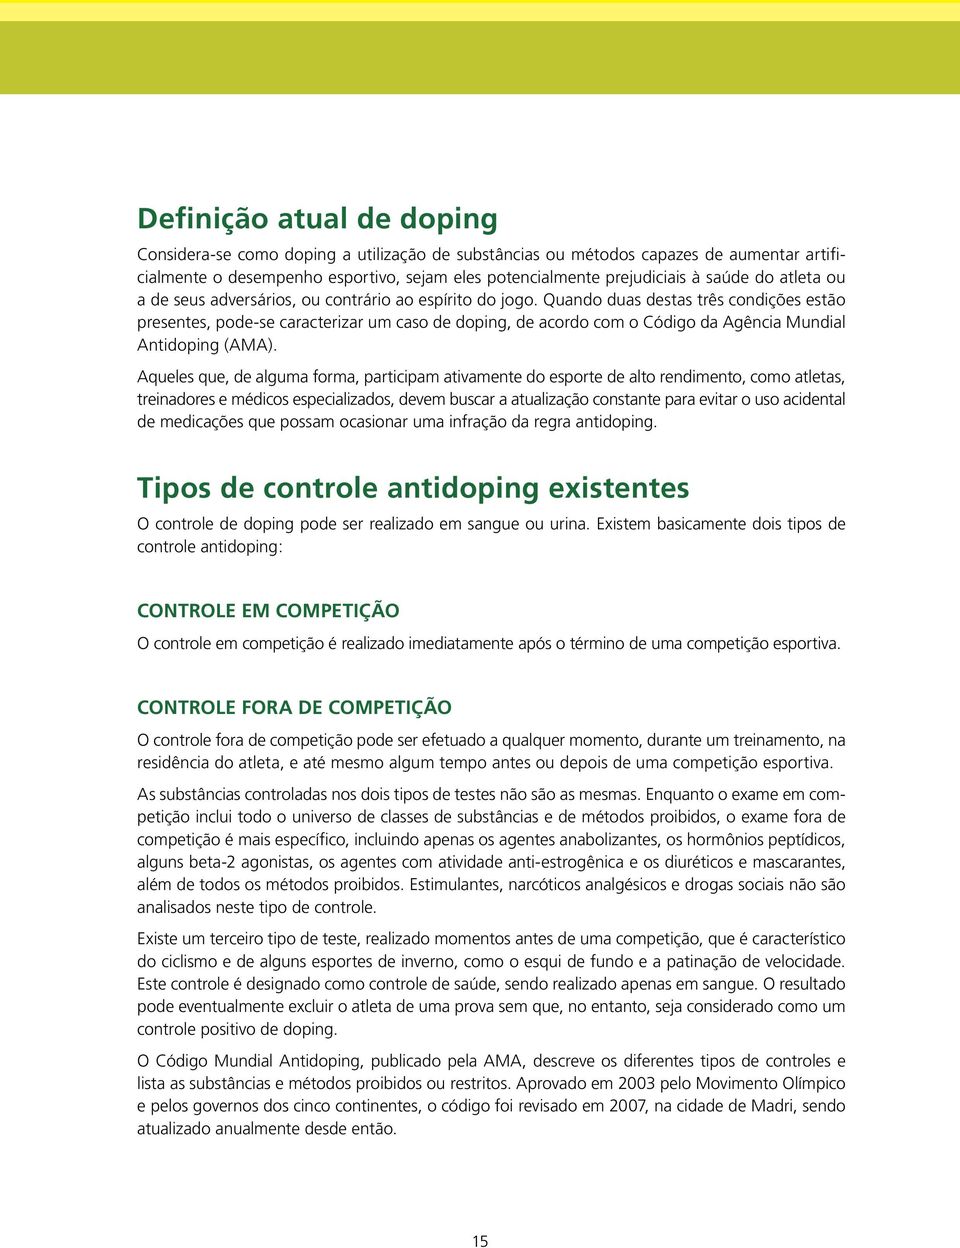 Quando duas destas três condições estão presentes, pode-se caracterizar um caso de doping, de acordo com o Código da Agência Mundial Antidoping (AMA).